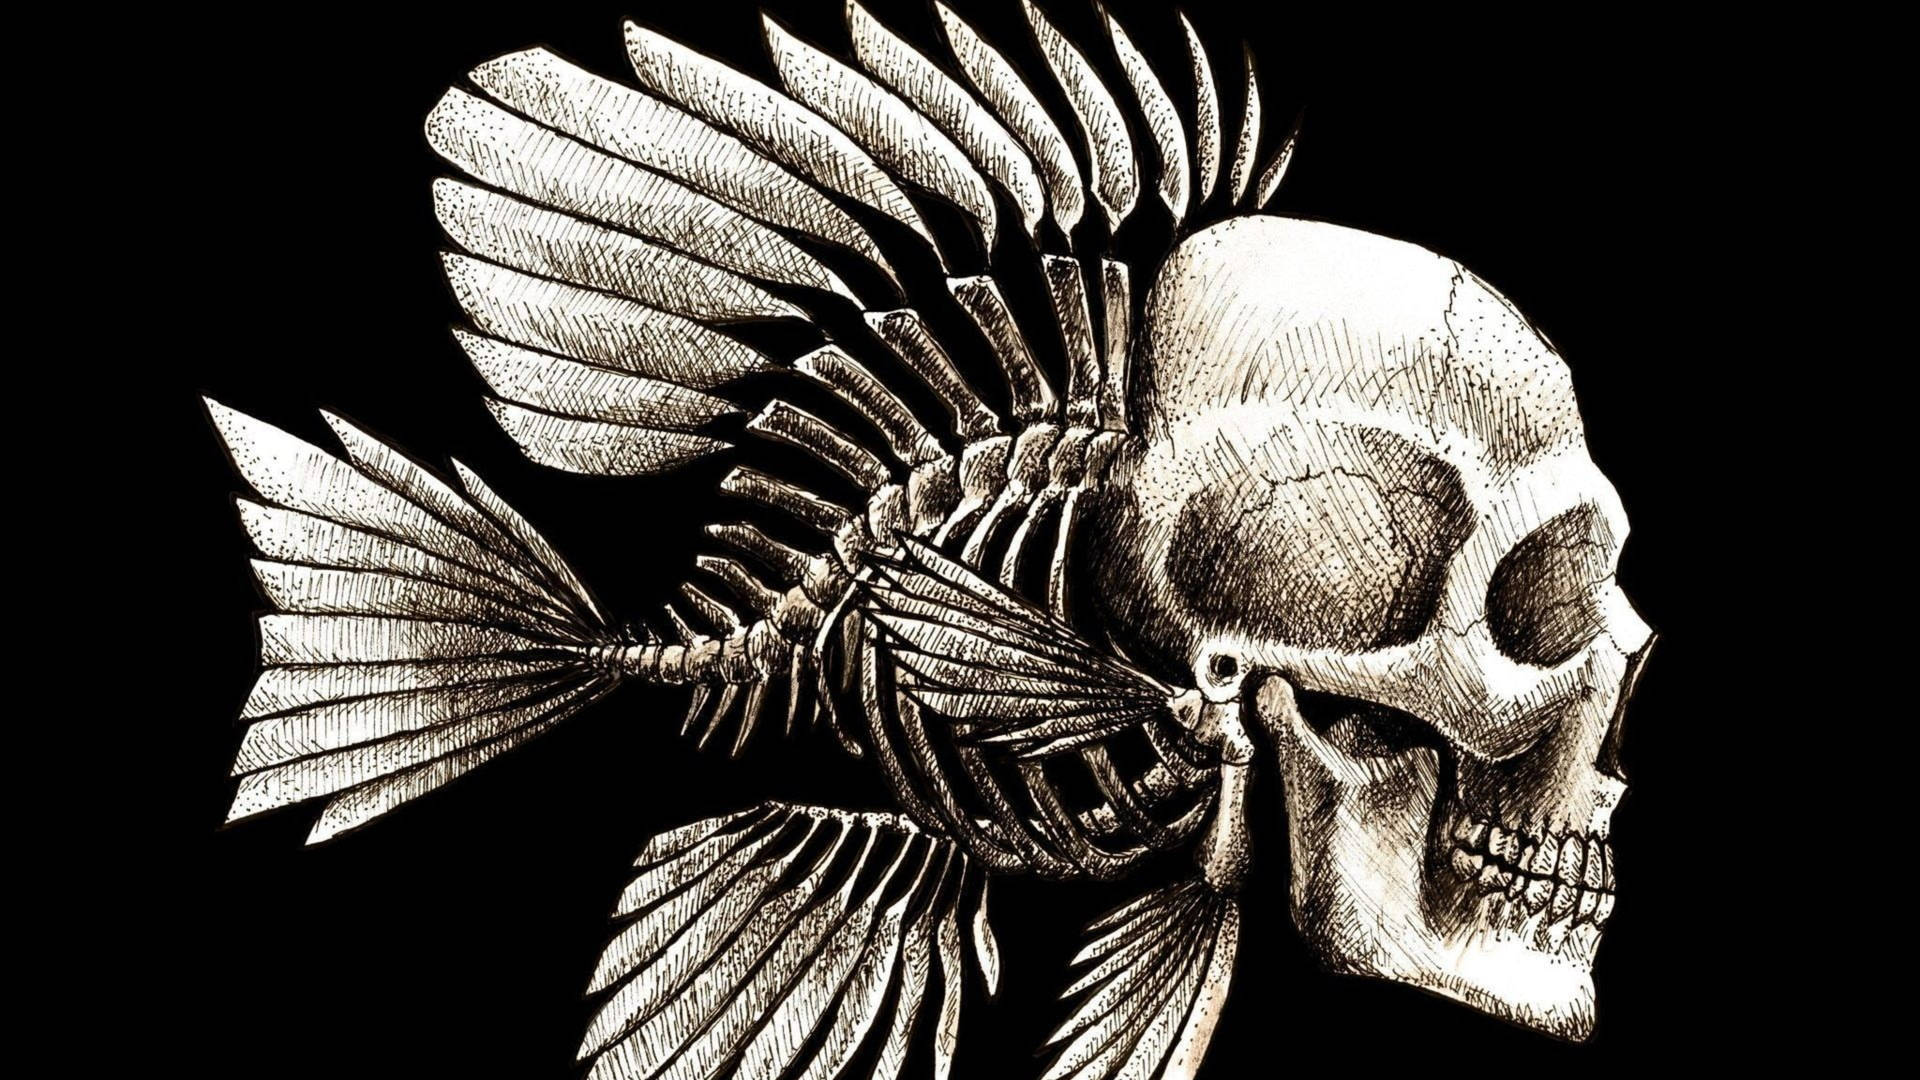 Fish Skull Dark Abstract Wallpaper